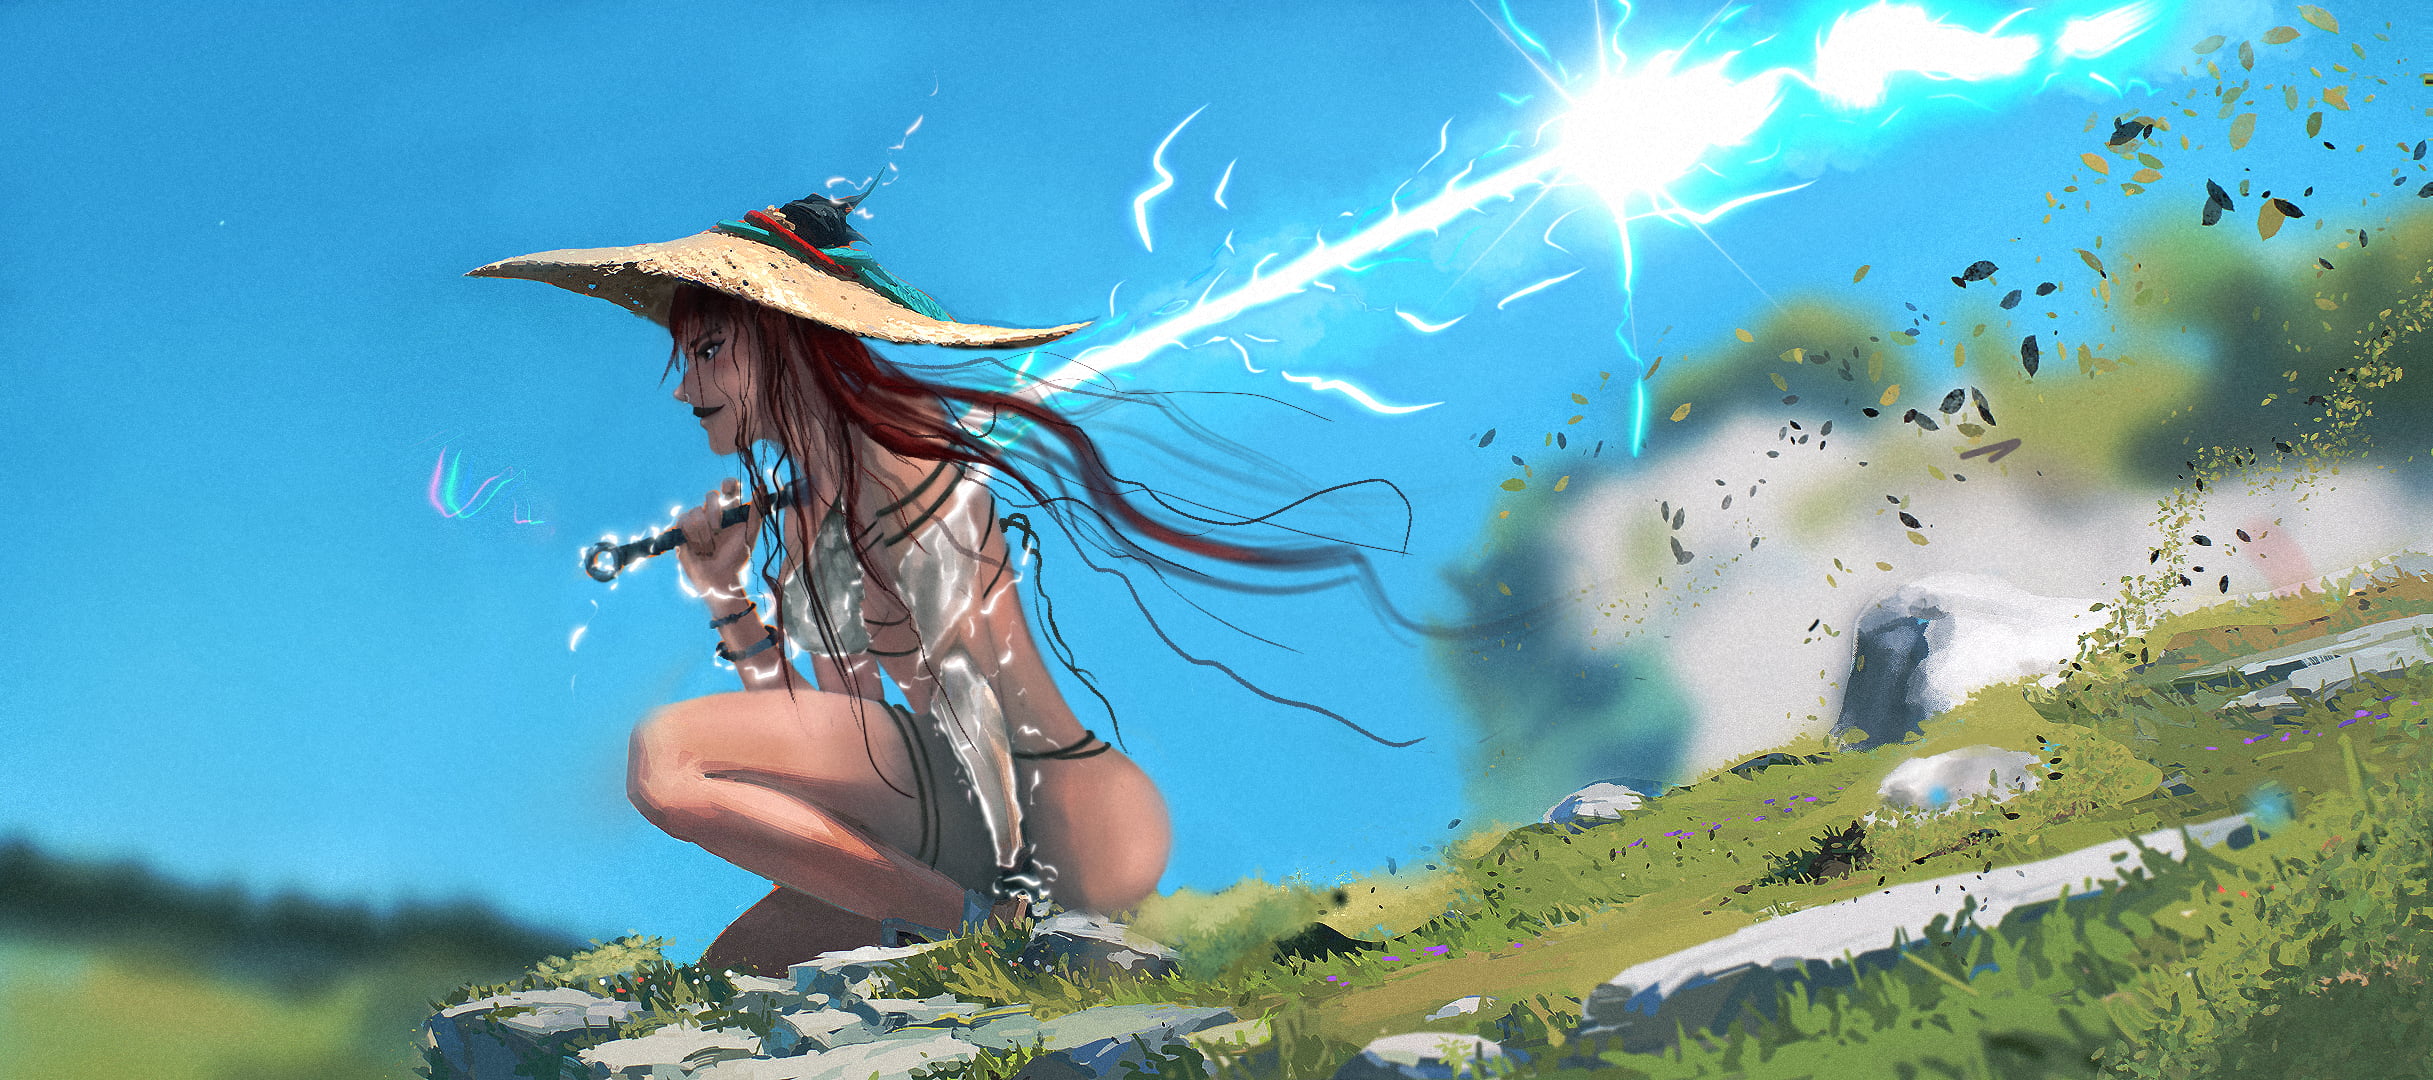 lightning, warrior, anime girls, landscape